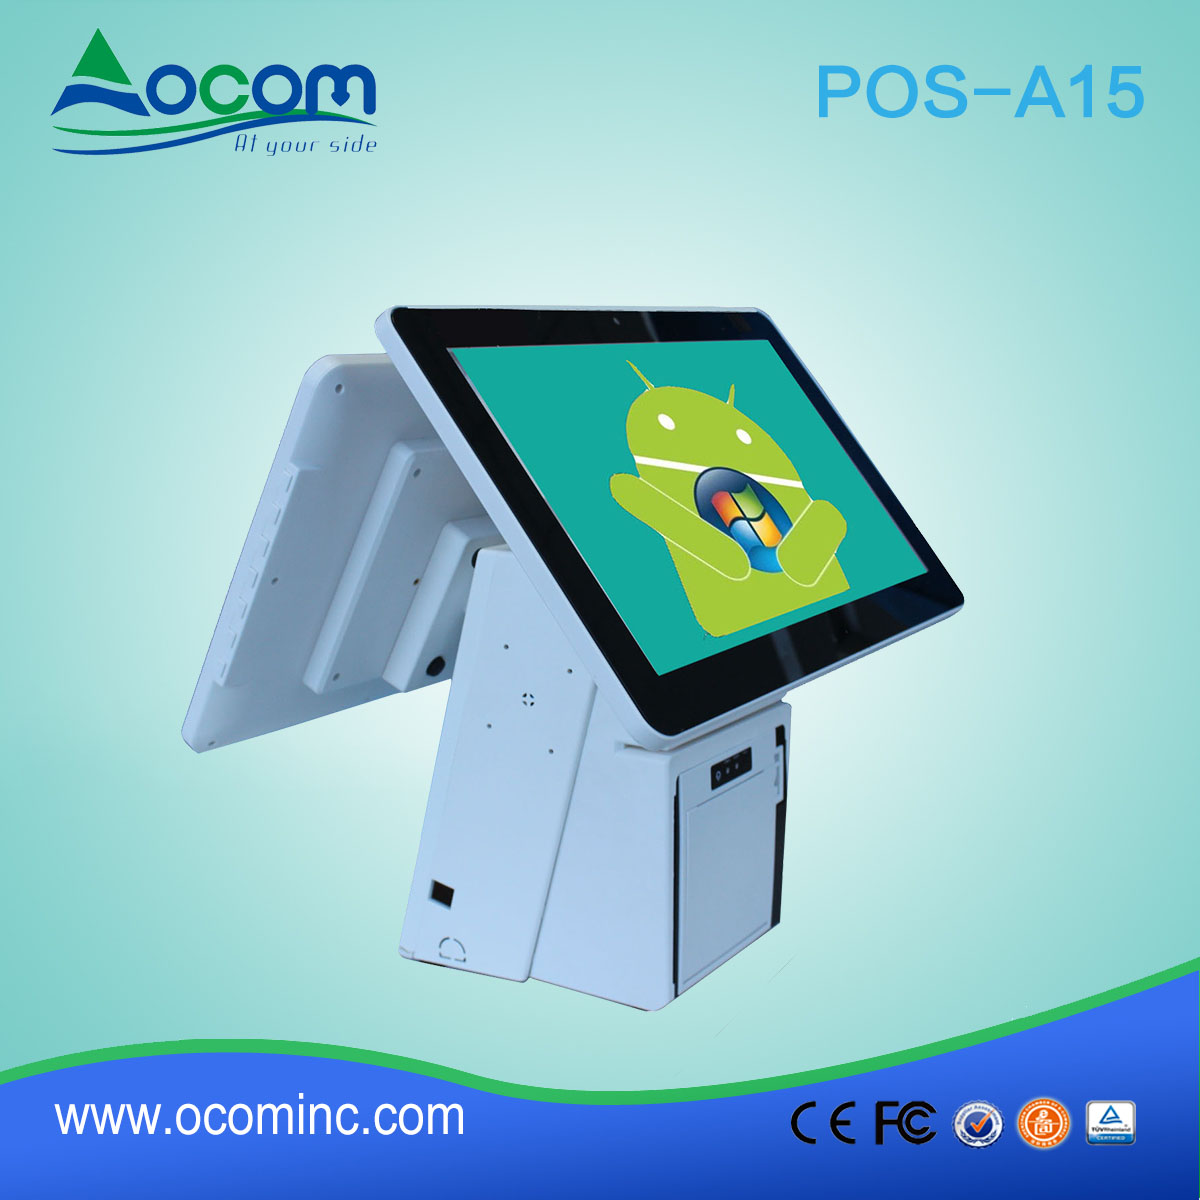 (POS-A15) 15,6 polegadas todos os ine na Touch sreen POS Terminal com impressora térmica